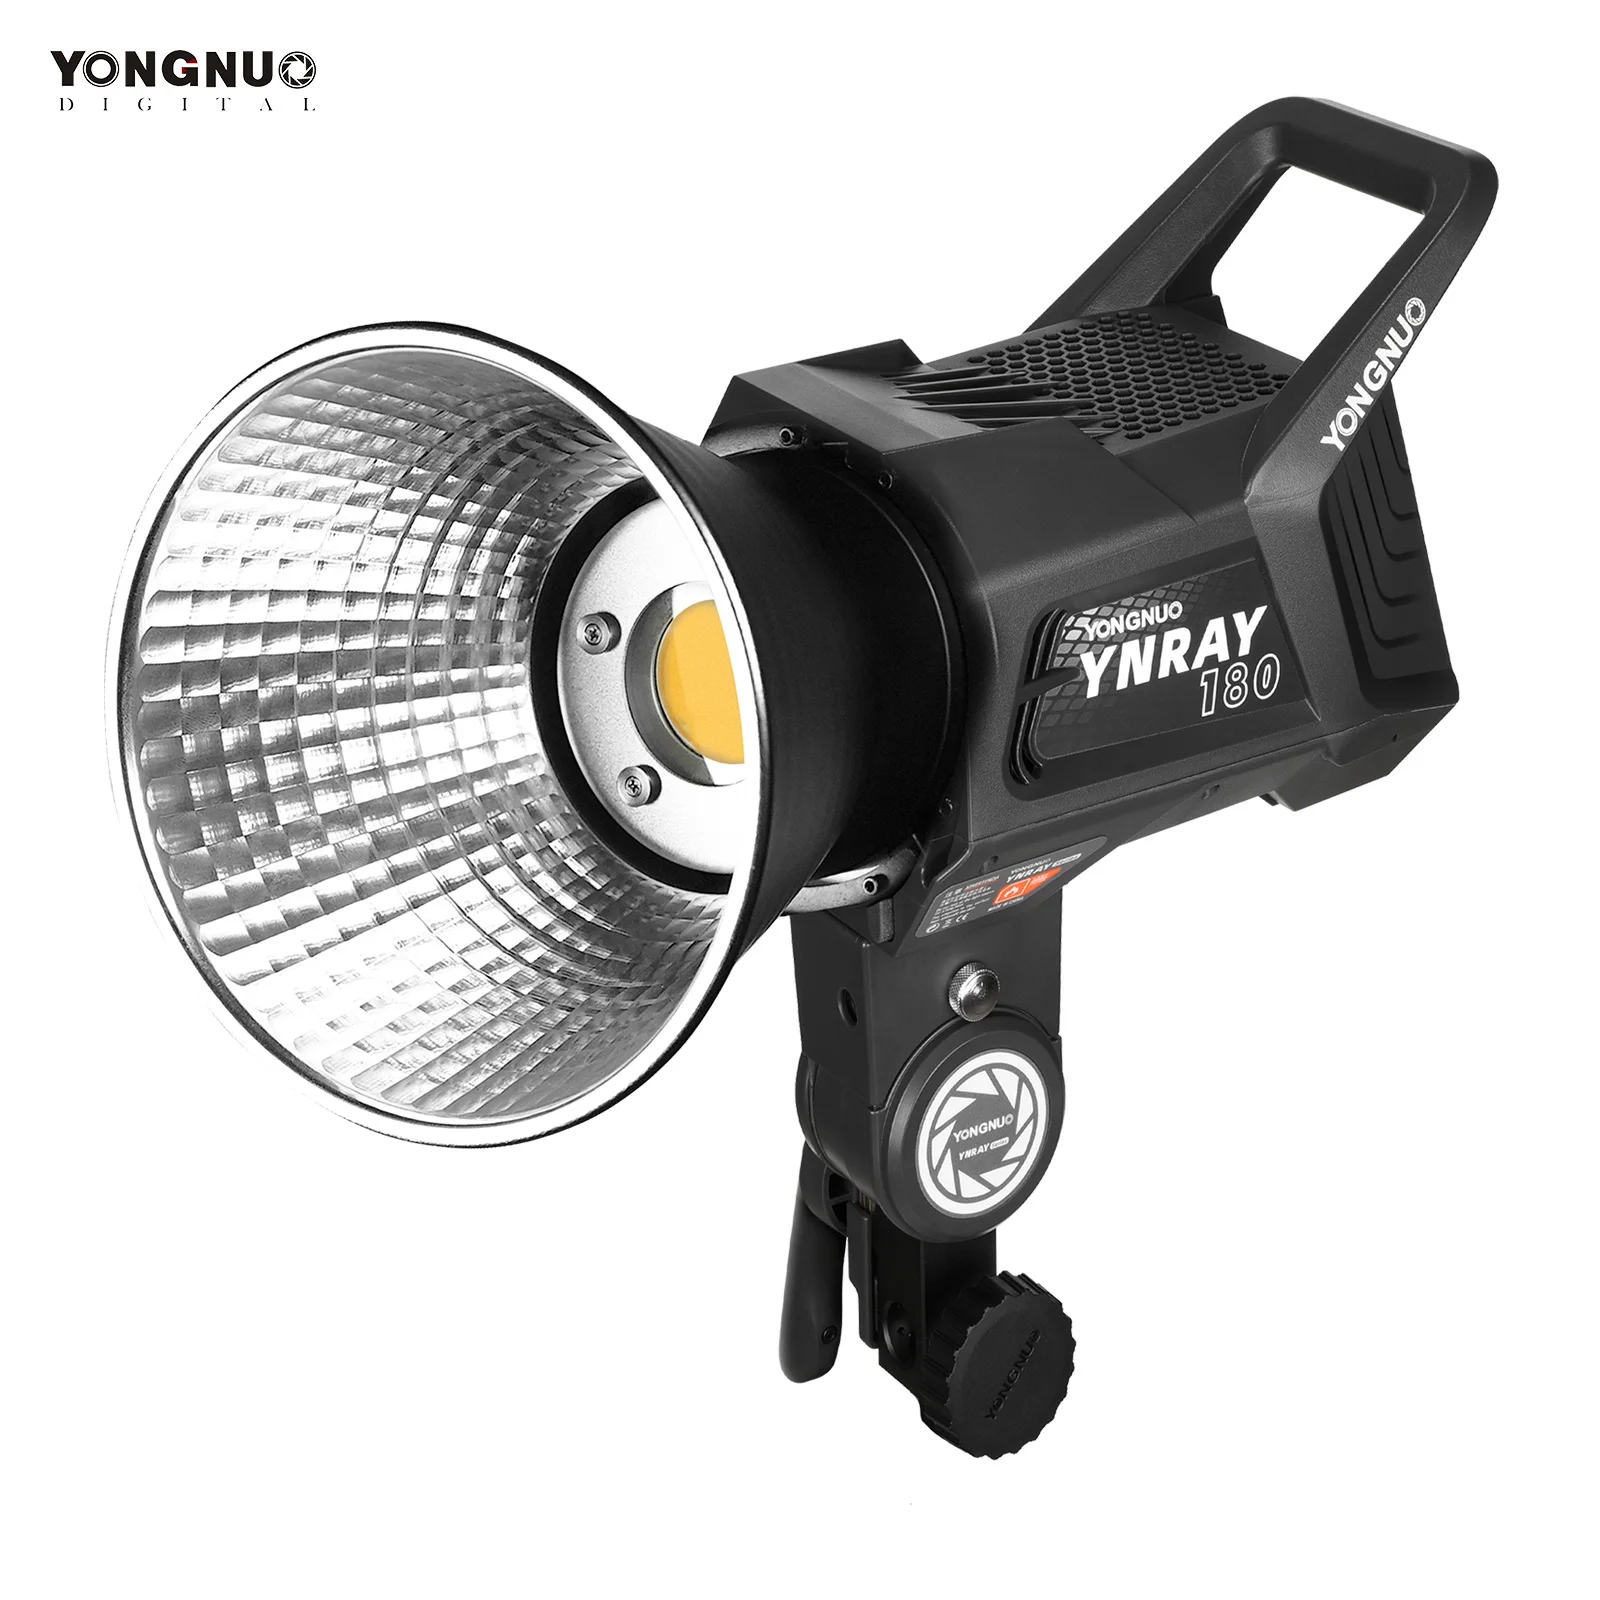 

YONGNUO YNRAY180 180 Вт студийный светодиодный светильник для видеосъемки заполнясветильник 5600K с регулируемой яркостью Ra96 + для прямой трансляции с...